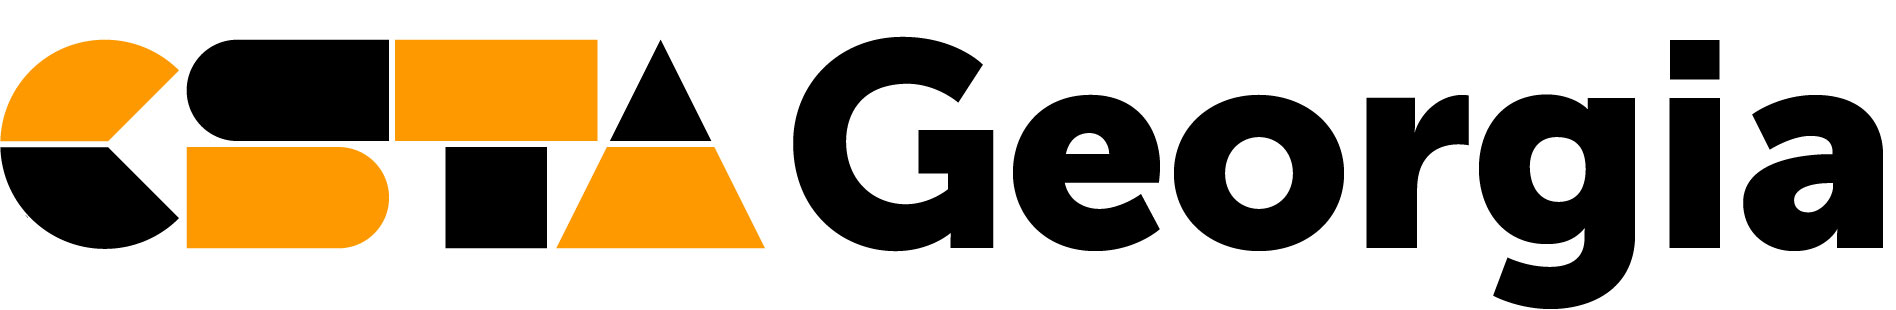 CSTA Georgia logo